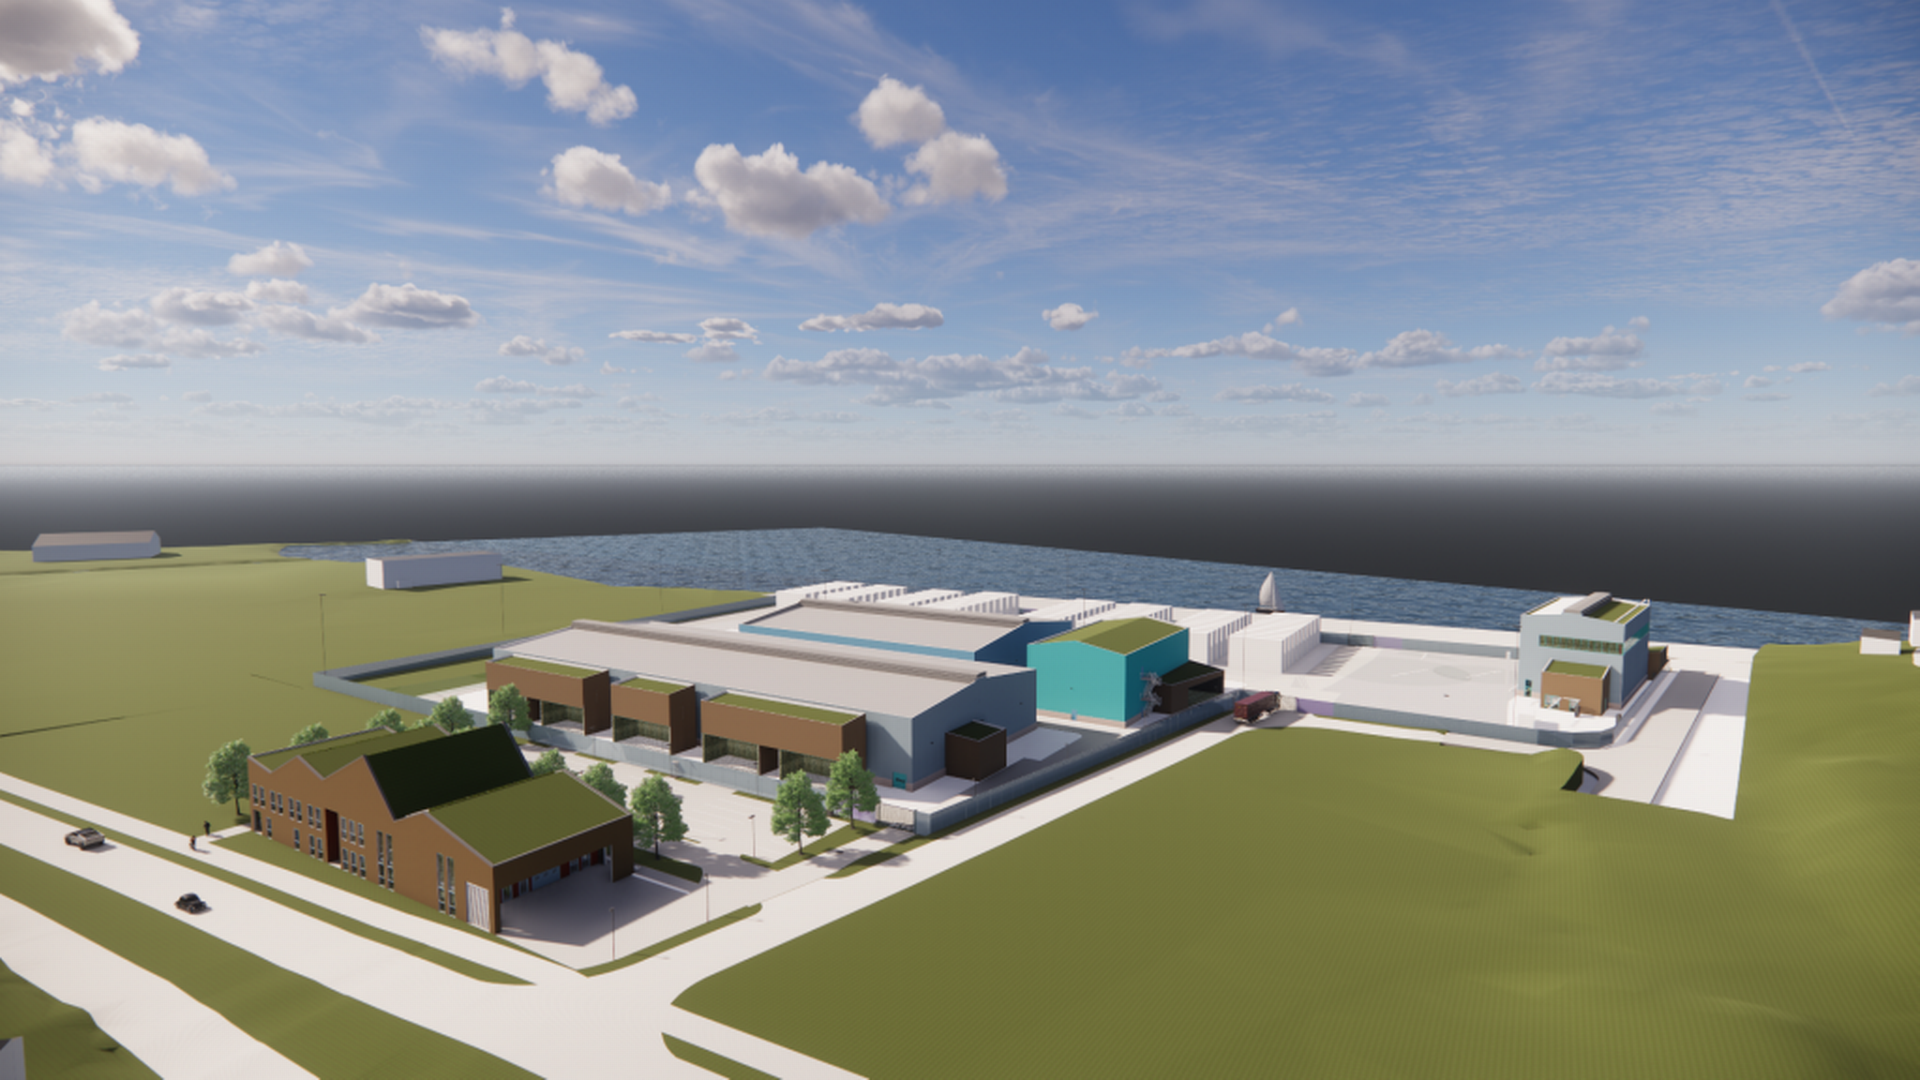 MÅSJØEN: Illustrasjon over hvordan hydrogenfabrikken i Mosjøen kan bli seende ut.